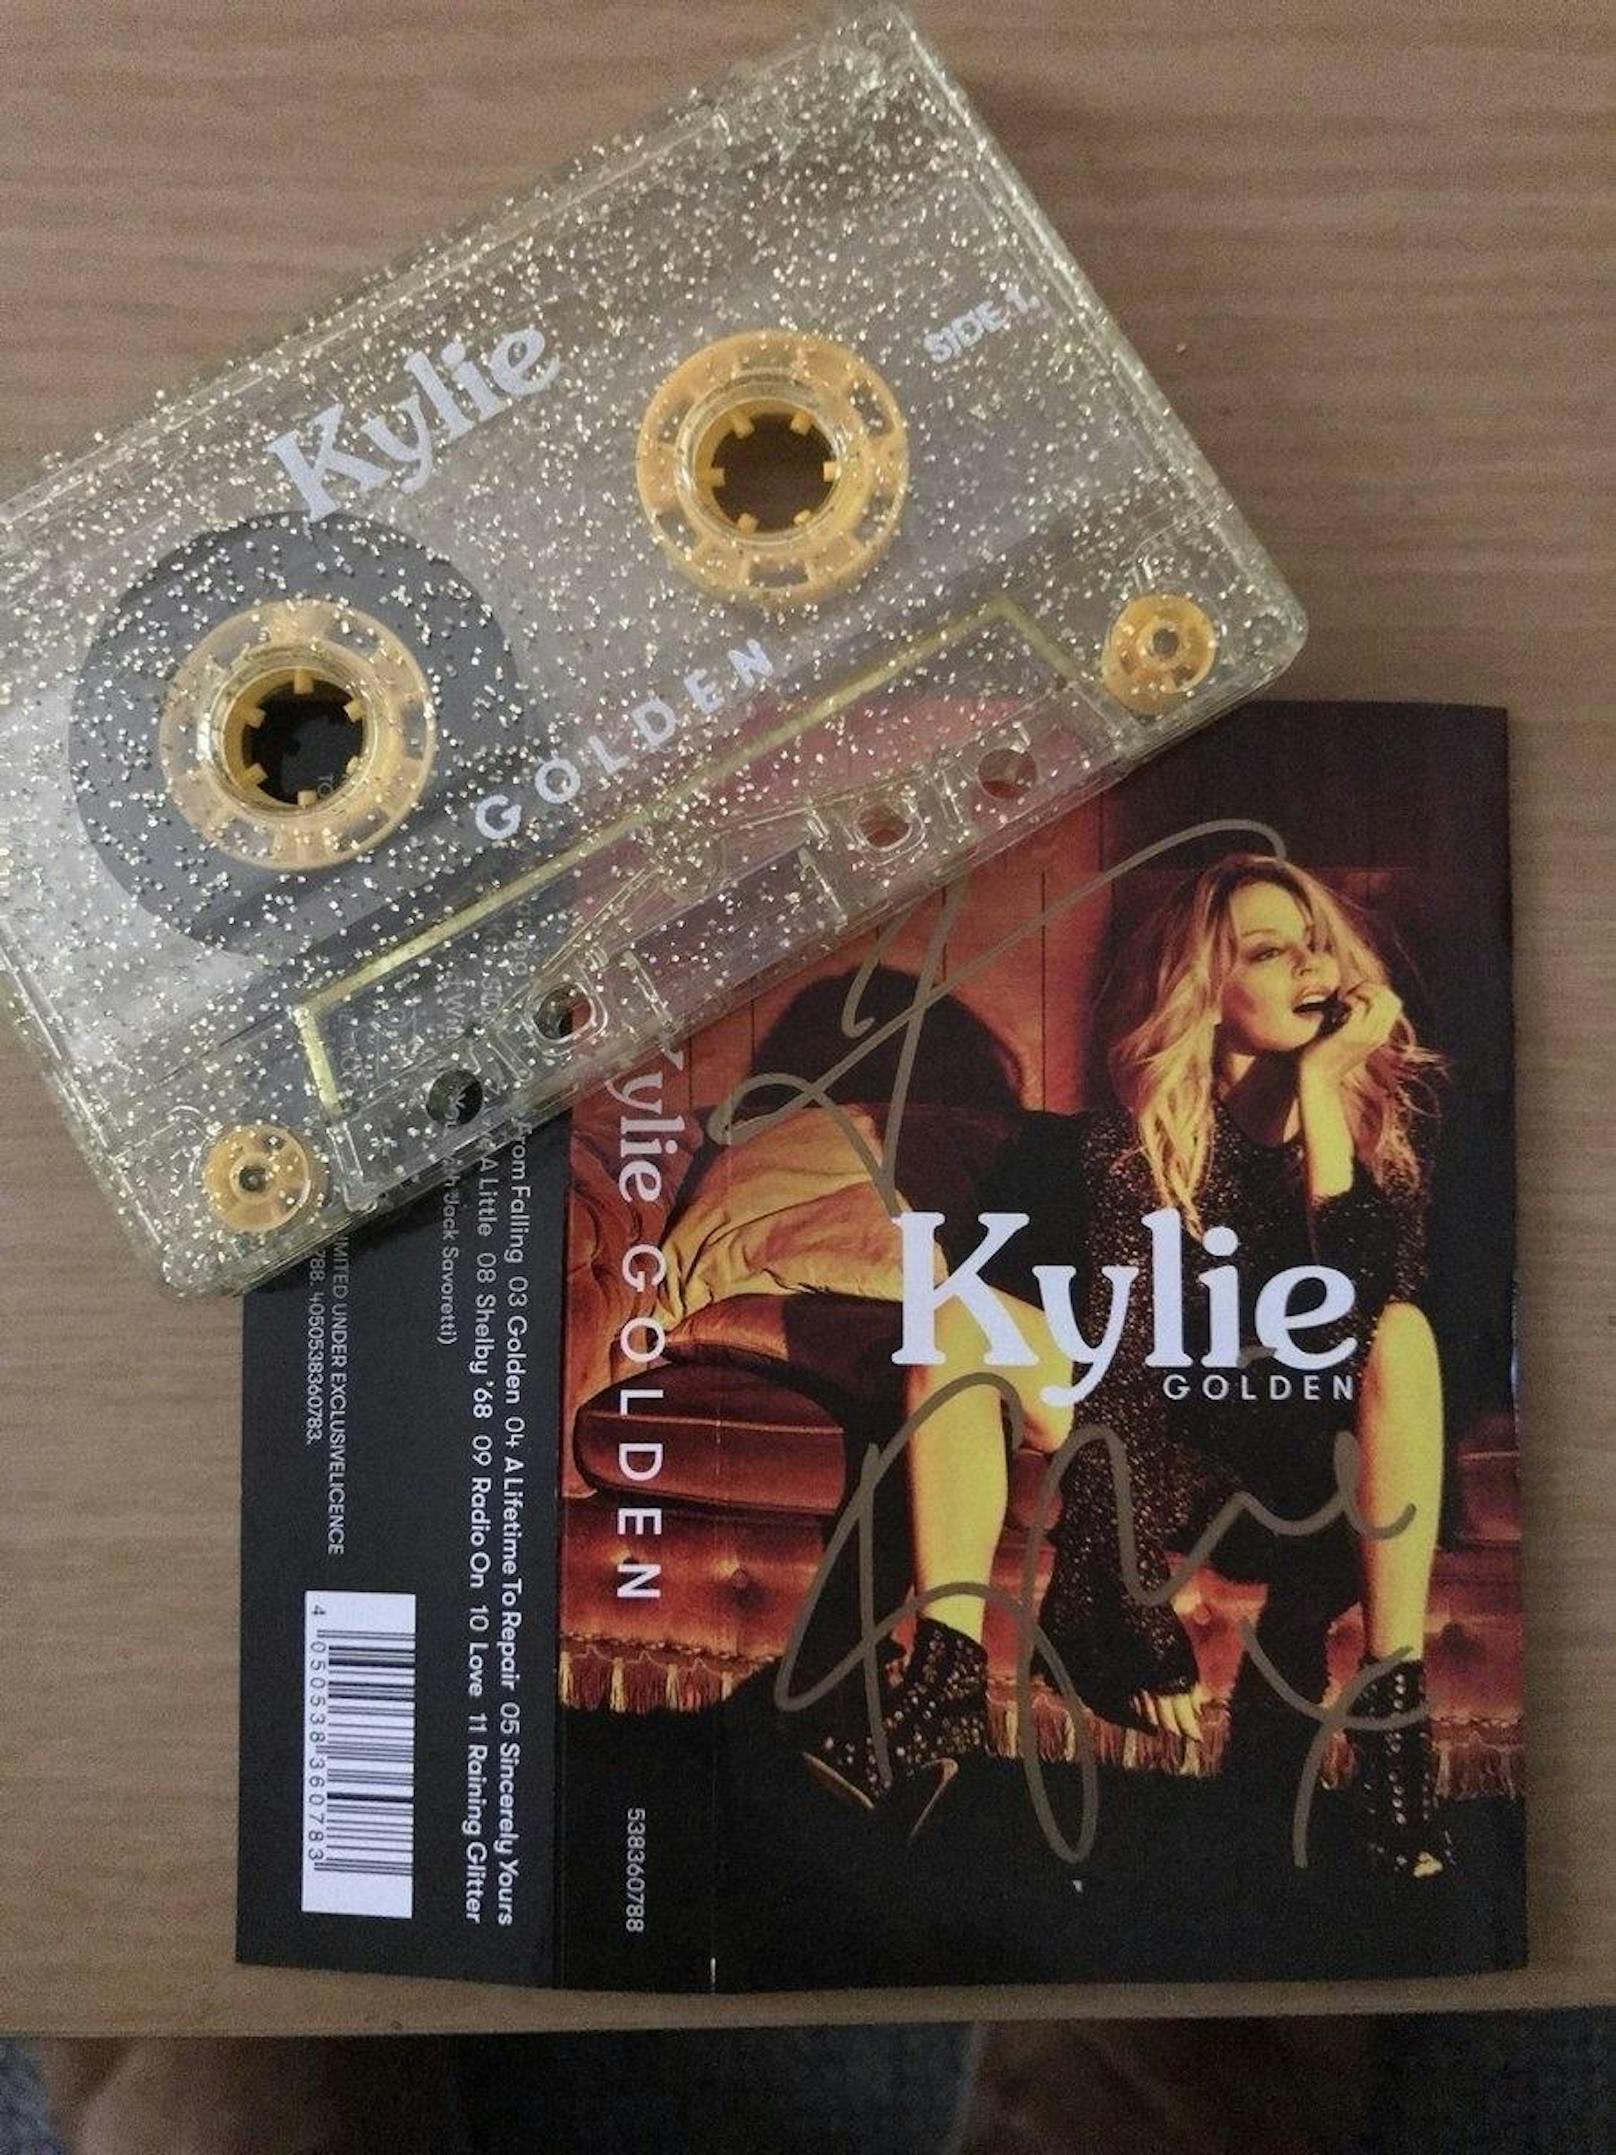 Kylie Minogue veröffentlichte ihr letztes Album "Golden" stilecht auf einer goldenen Kassette